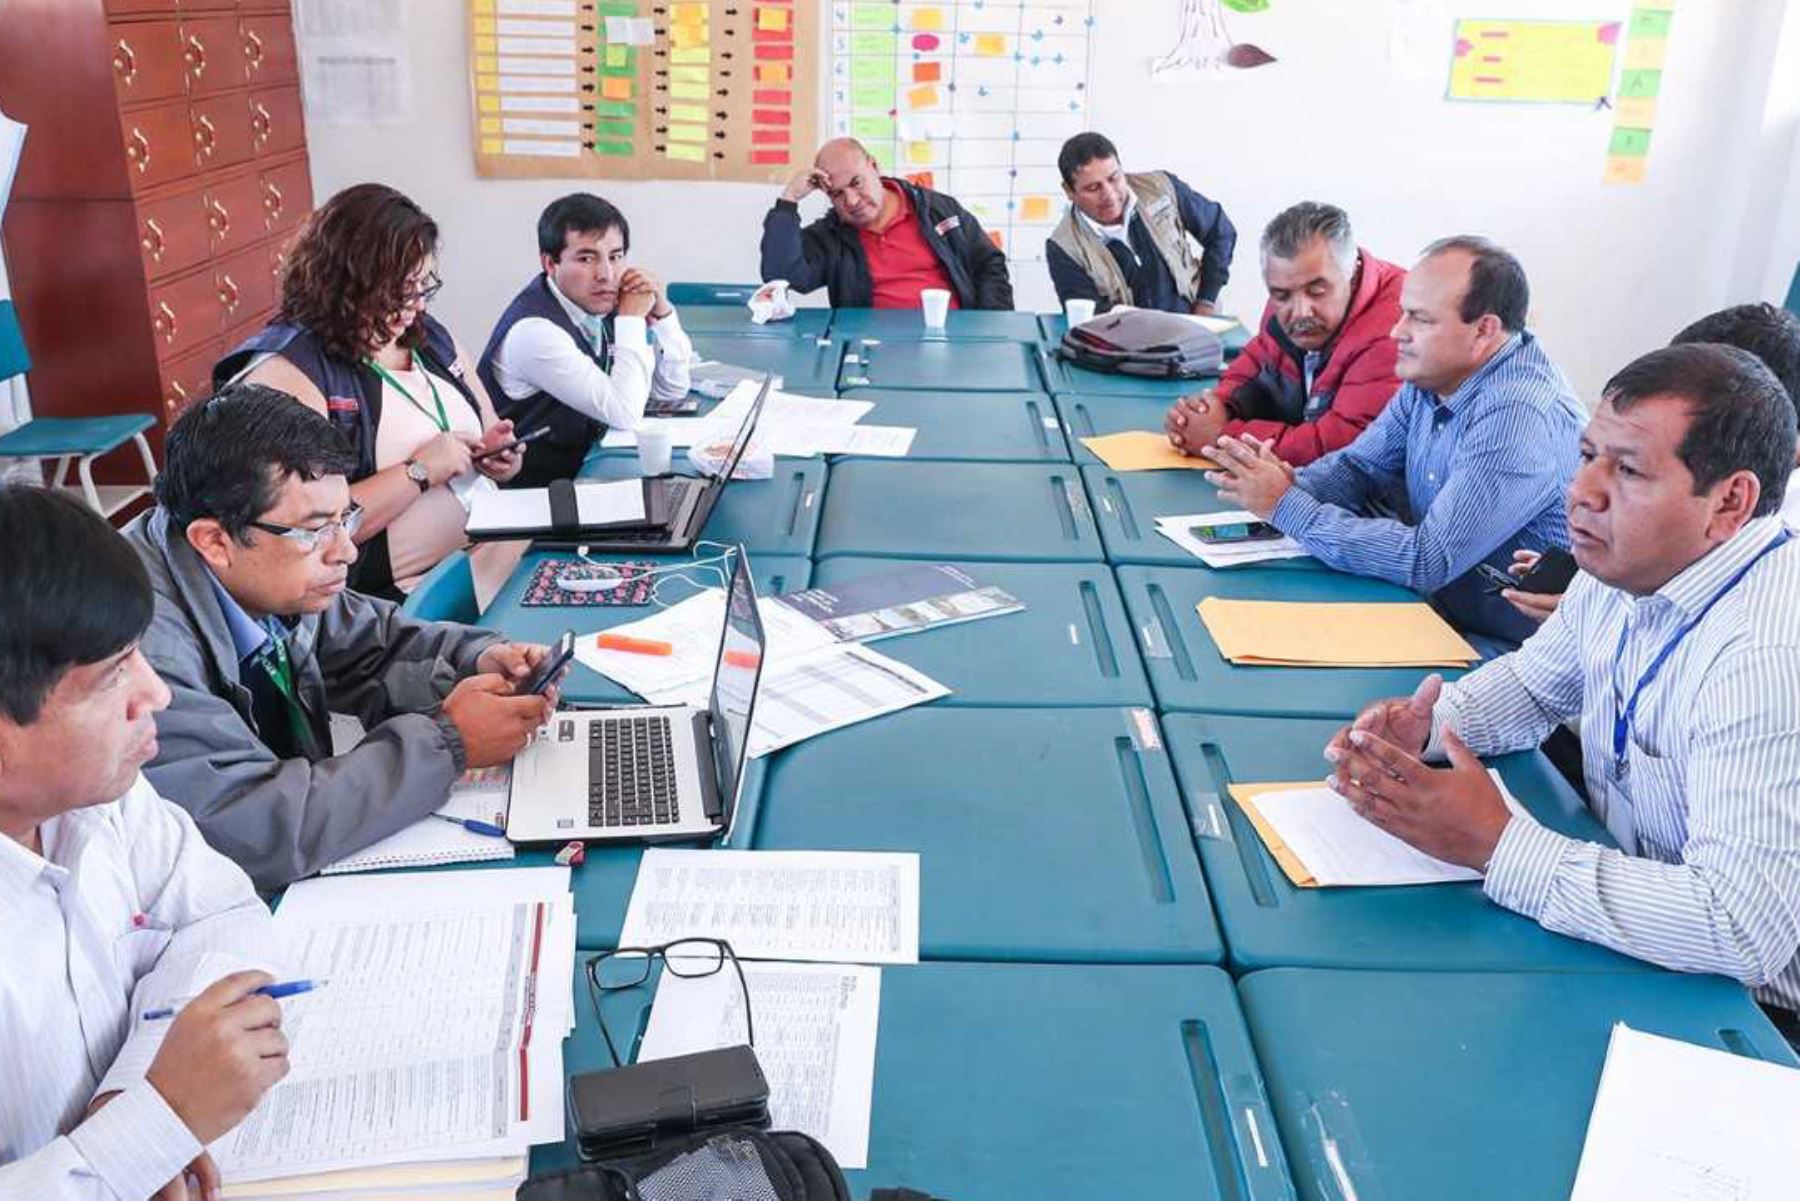 Durante su participación en el Muni Ejecutivo, desarrollado en esta ciudad, funcionarios del Ministerio de Energía y Minas (MEM) se reunieron con los alcaldes de las 13 provincias de Cajamarca para identificar y dar prioridad a los proyectos de electrificación en las zonas rurales a fin de mejorar la calidad de vida de sus pobladores.